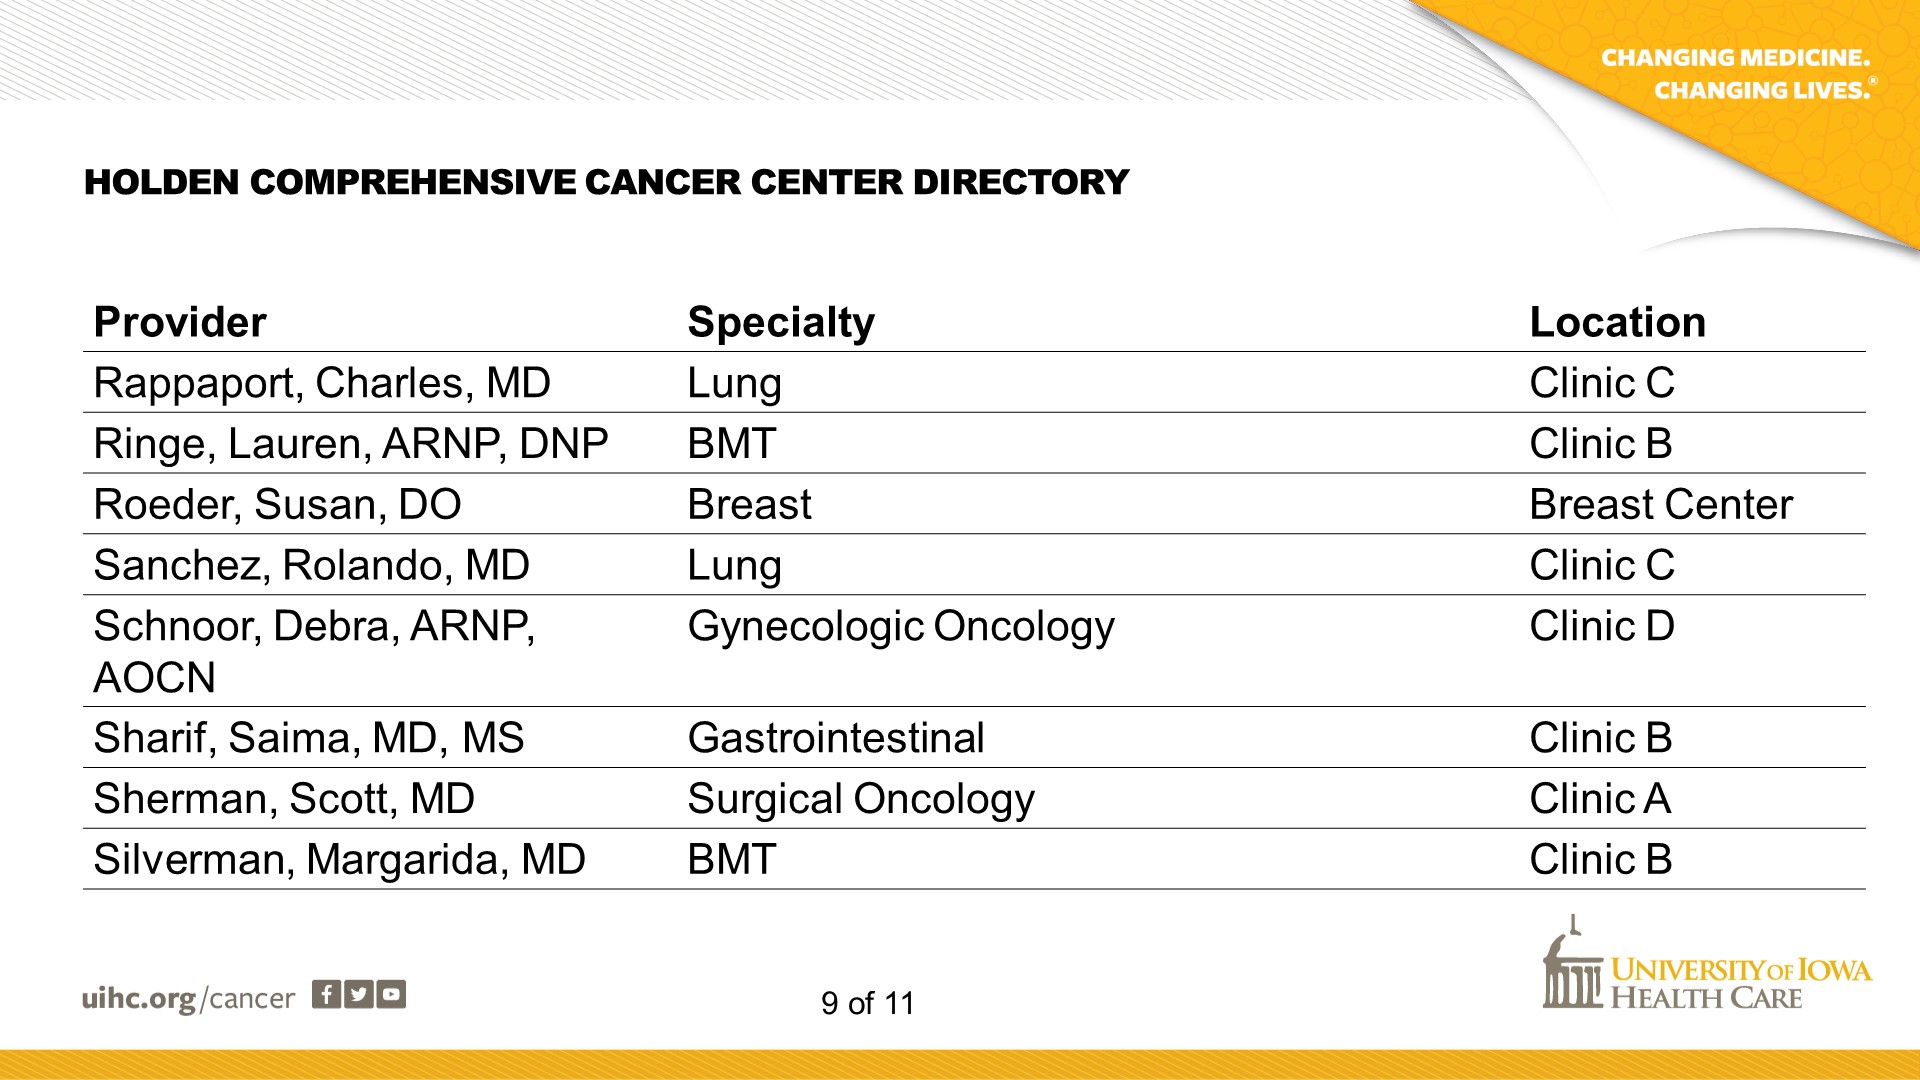 Cancer Center Directory - Slide 9